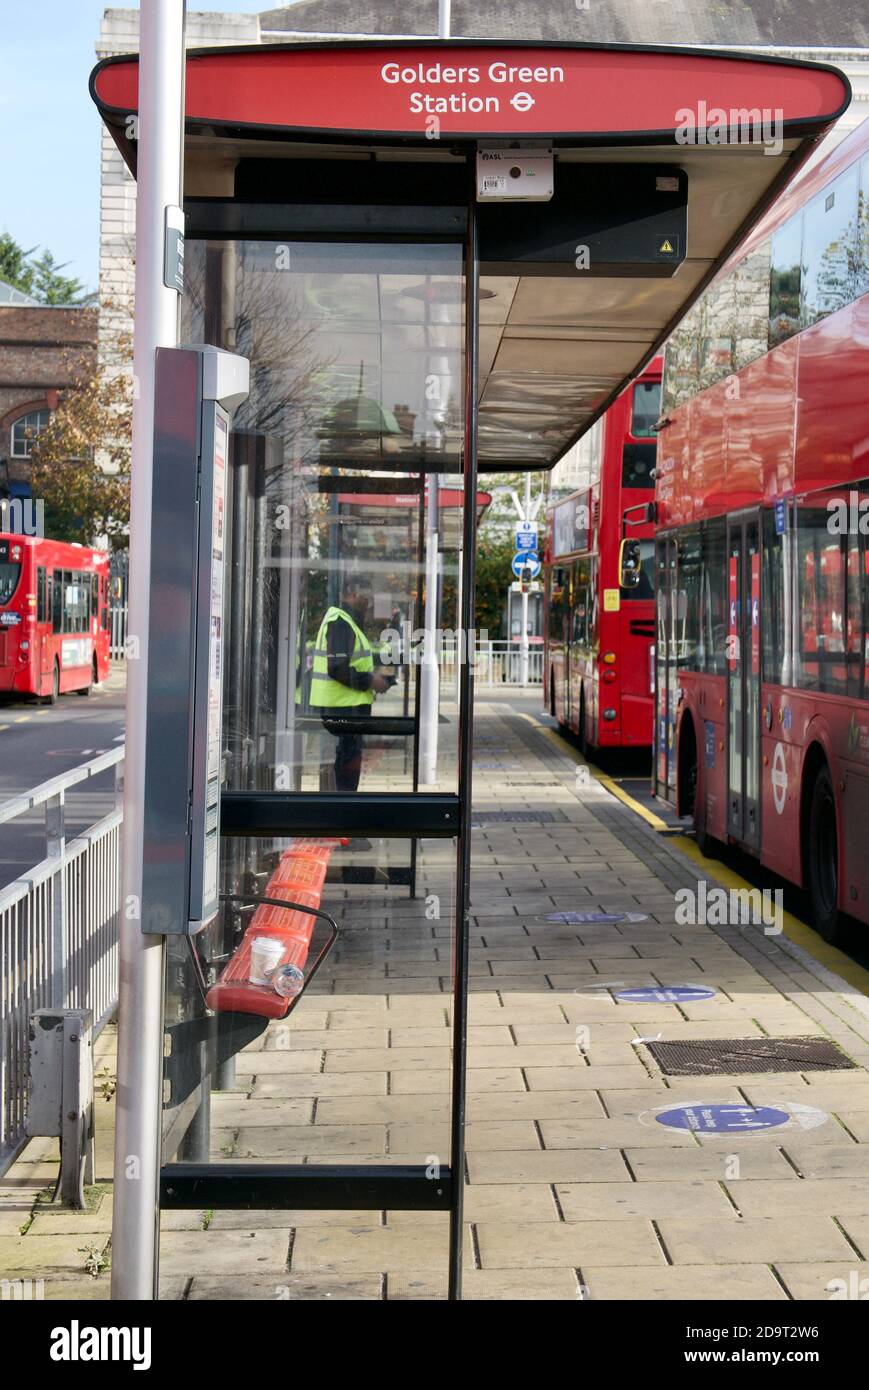 Das erste Wochenende der zweiten nationalen Sperre in Großbritannien. Leere rote Londoner Busse und Busbahnhof in Golders Green, London am Samstag, 7. November. Stockfoto